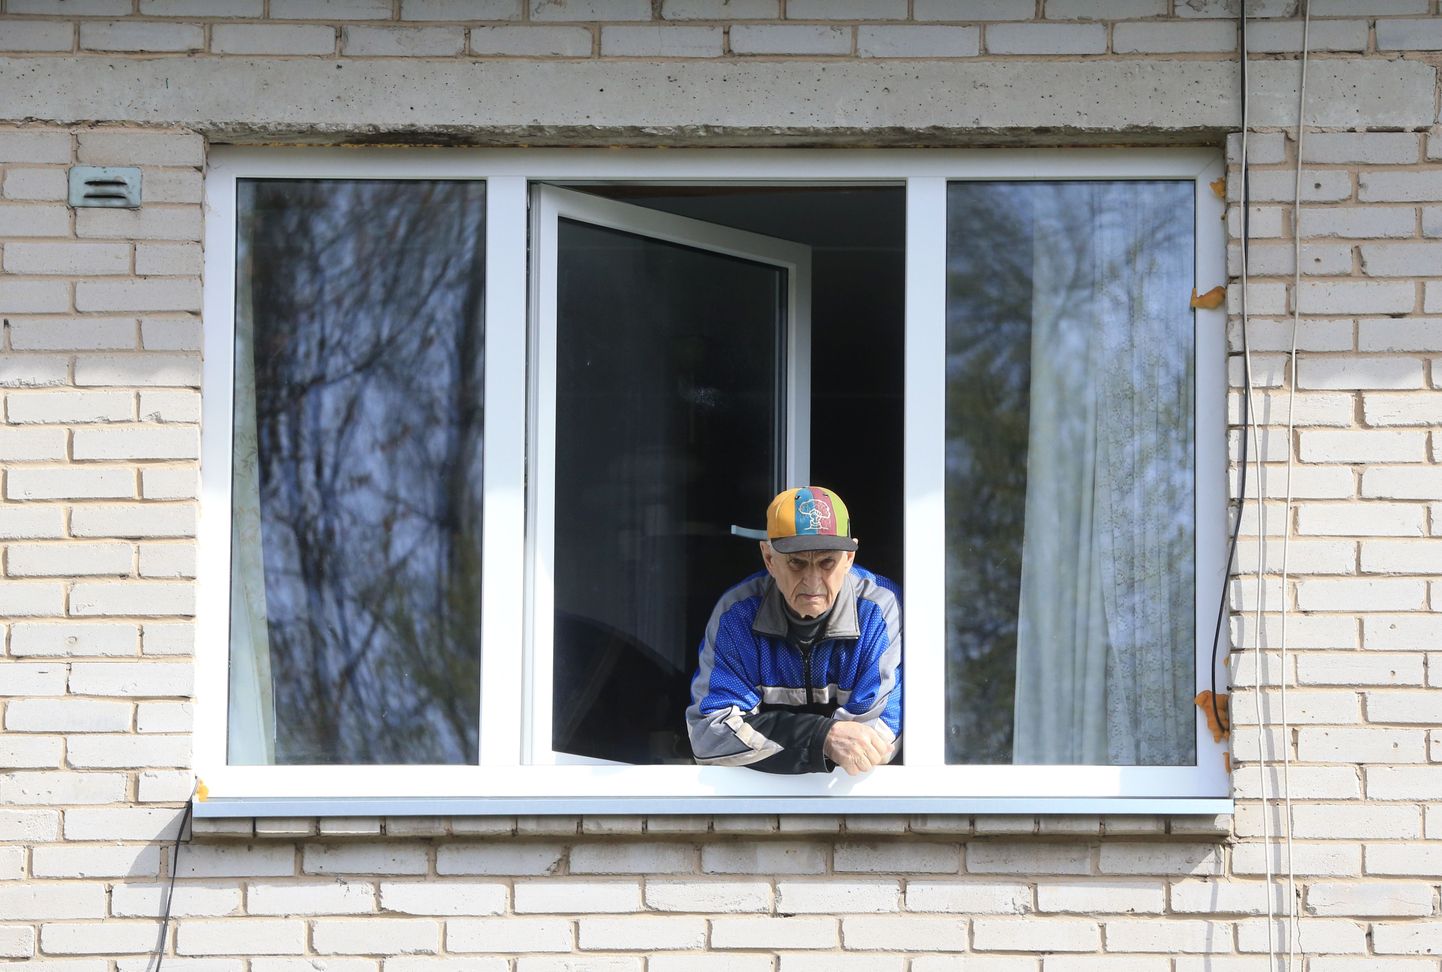 Житель Эльва Антс-Альберт Кангур у окна своей квартиры.